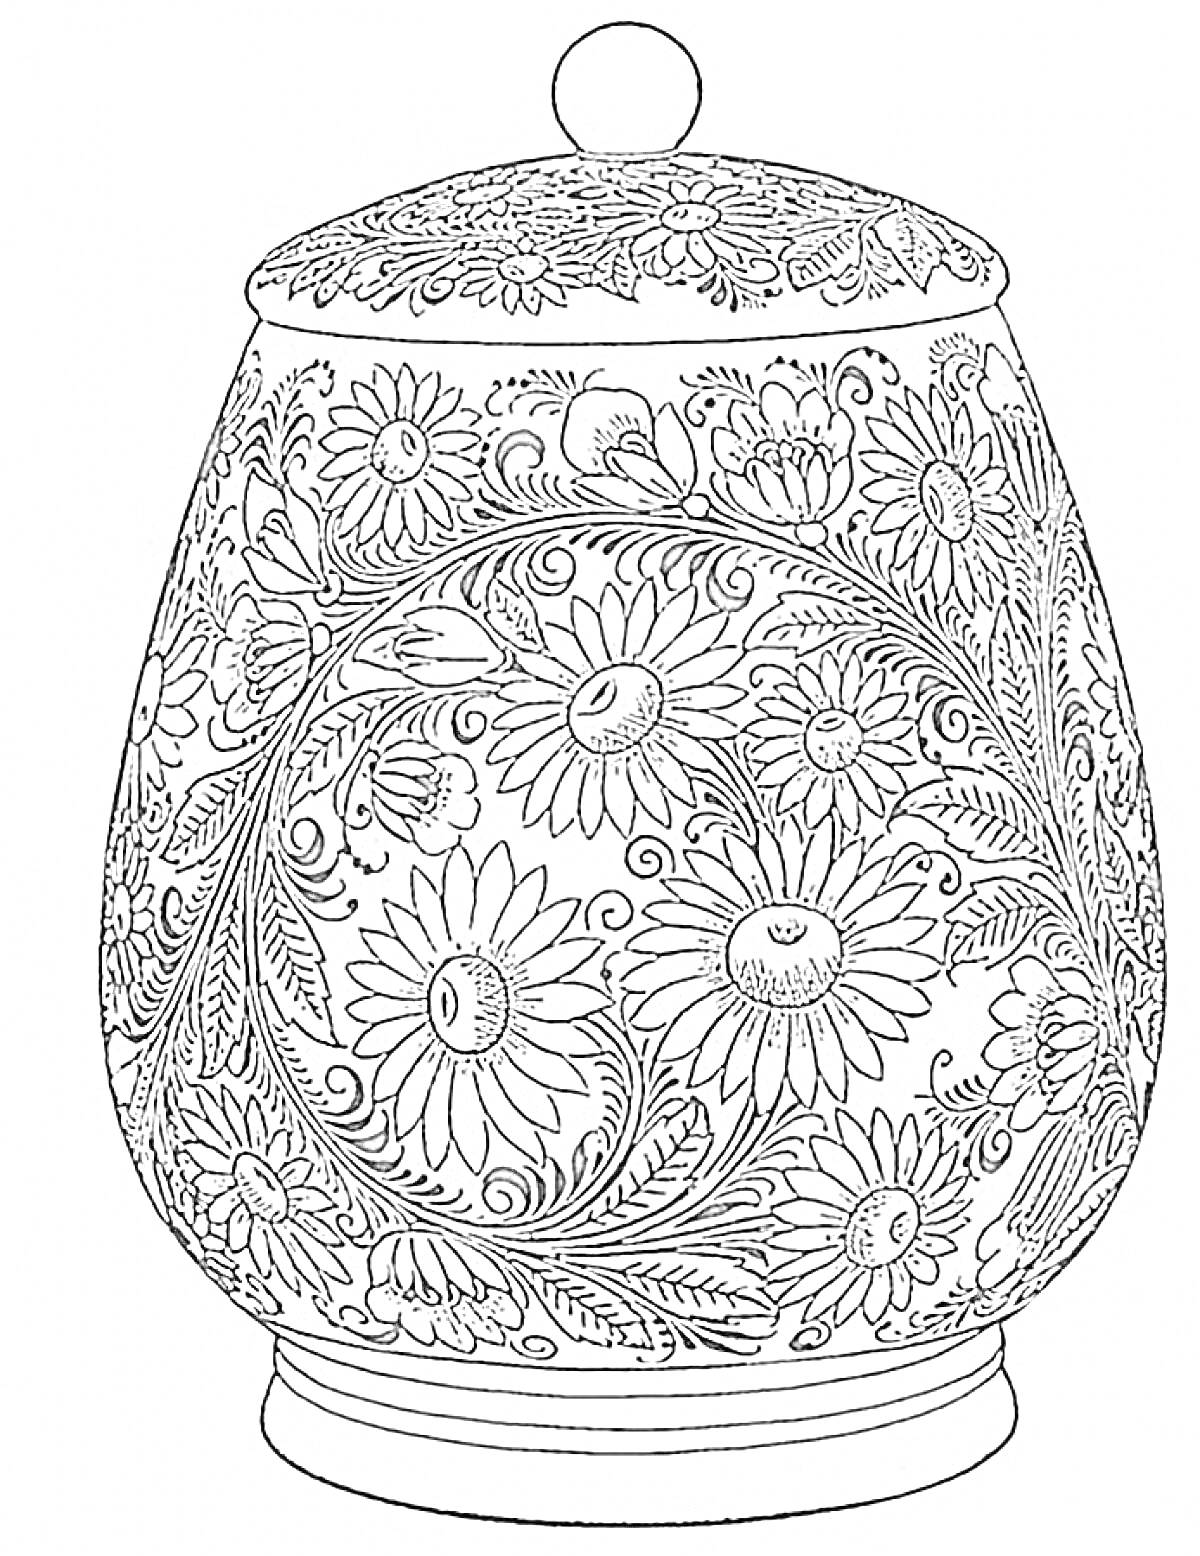 Раскраска Посудина с крышкой, украшенная узором хохломы с цветами и листьями